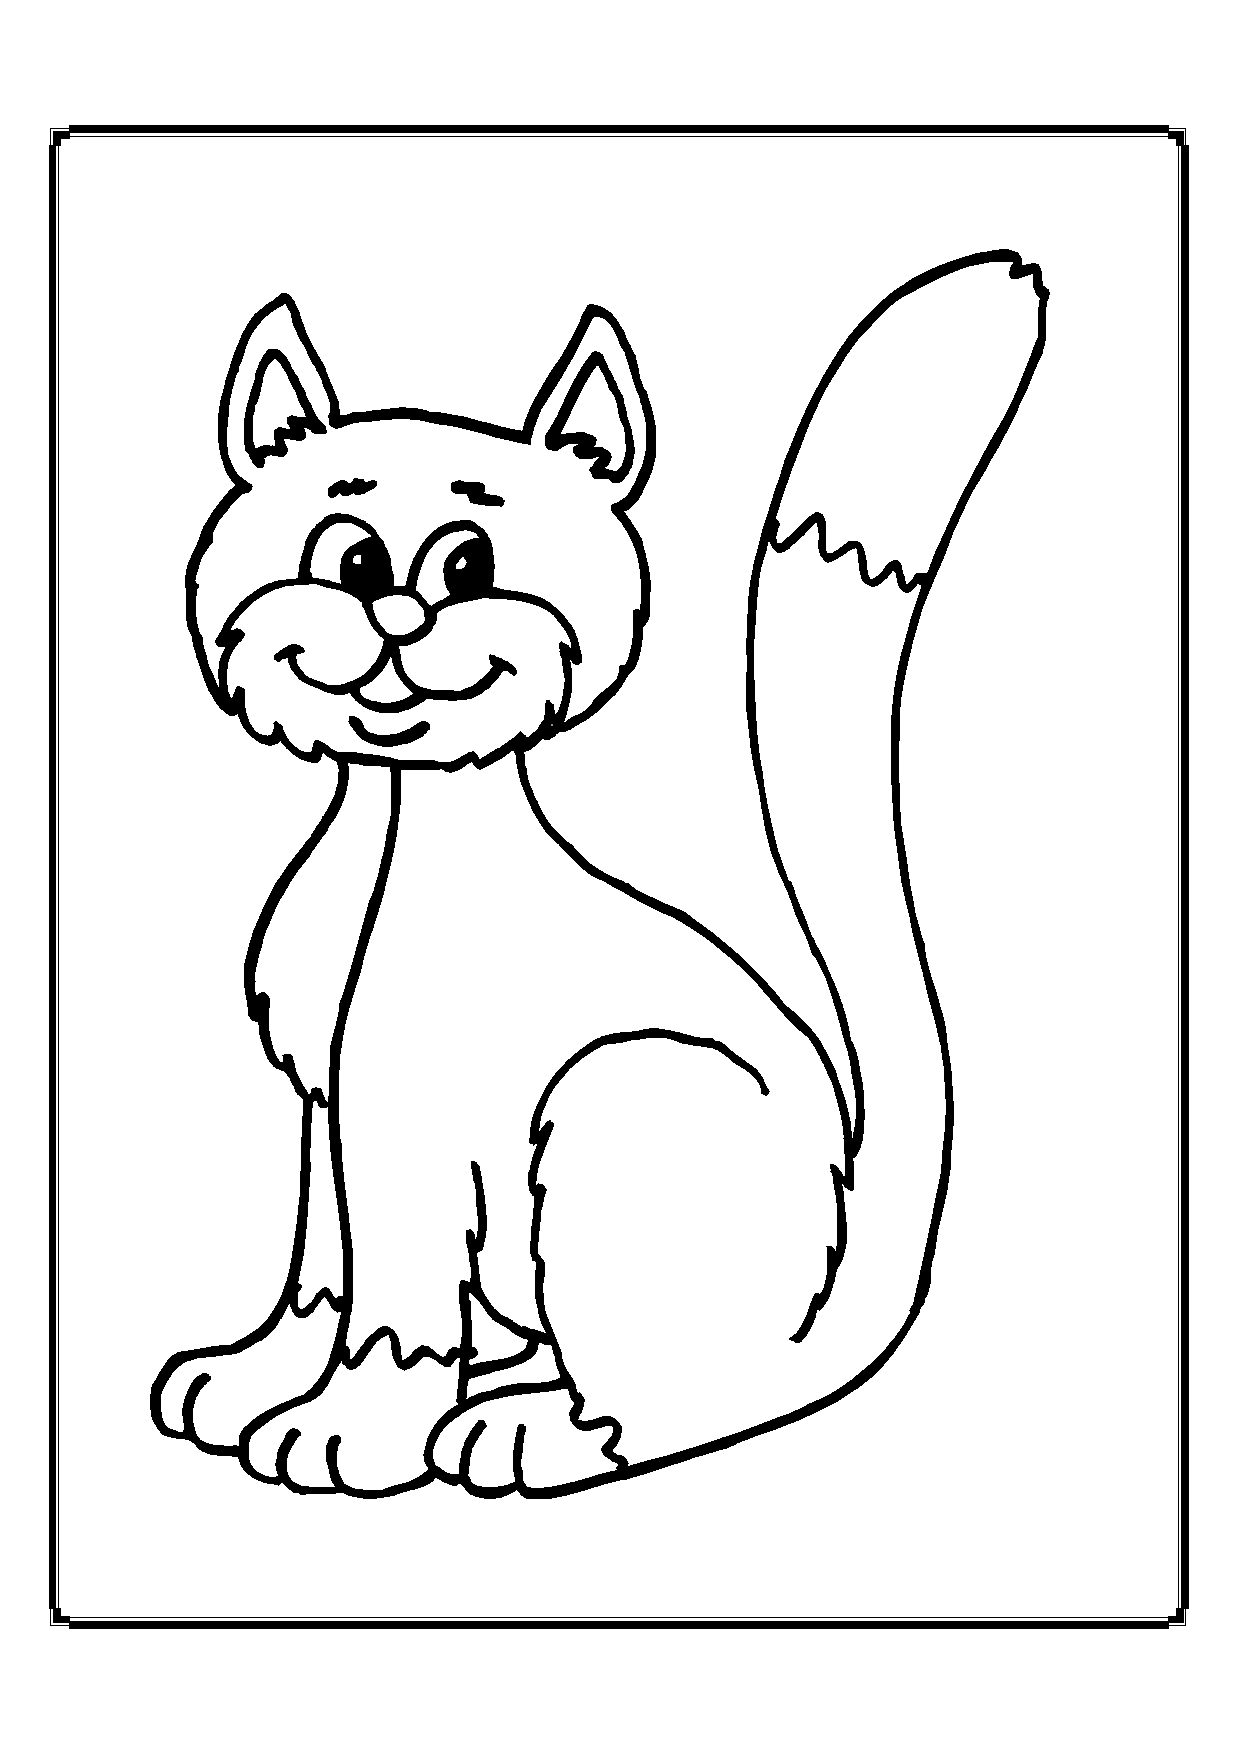 Kolorowanka kot z białą końcówką ogona i brodą siedzi unosząc ogon